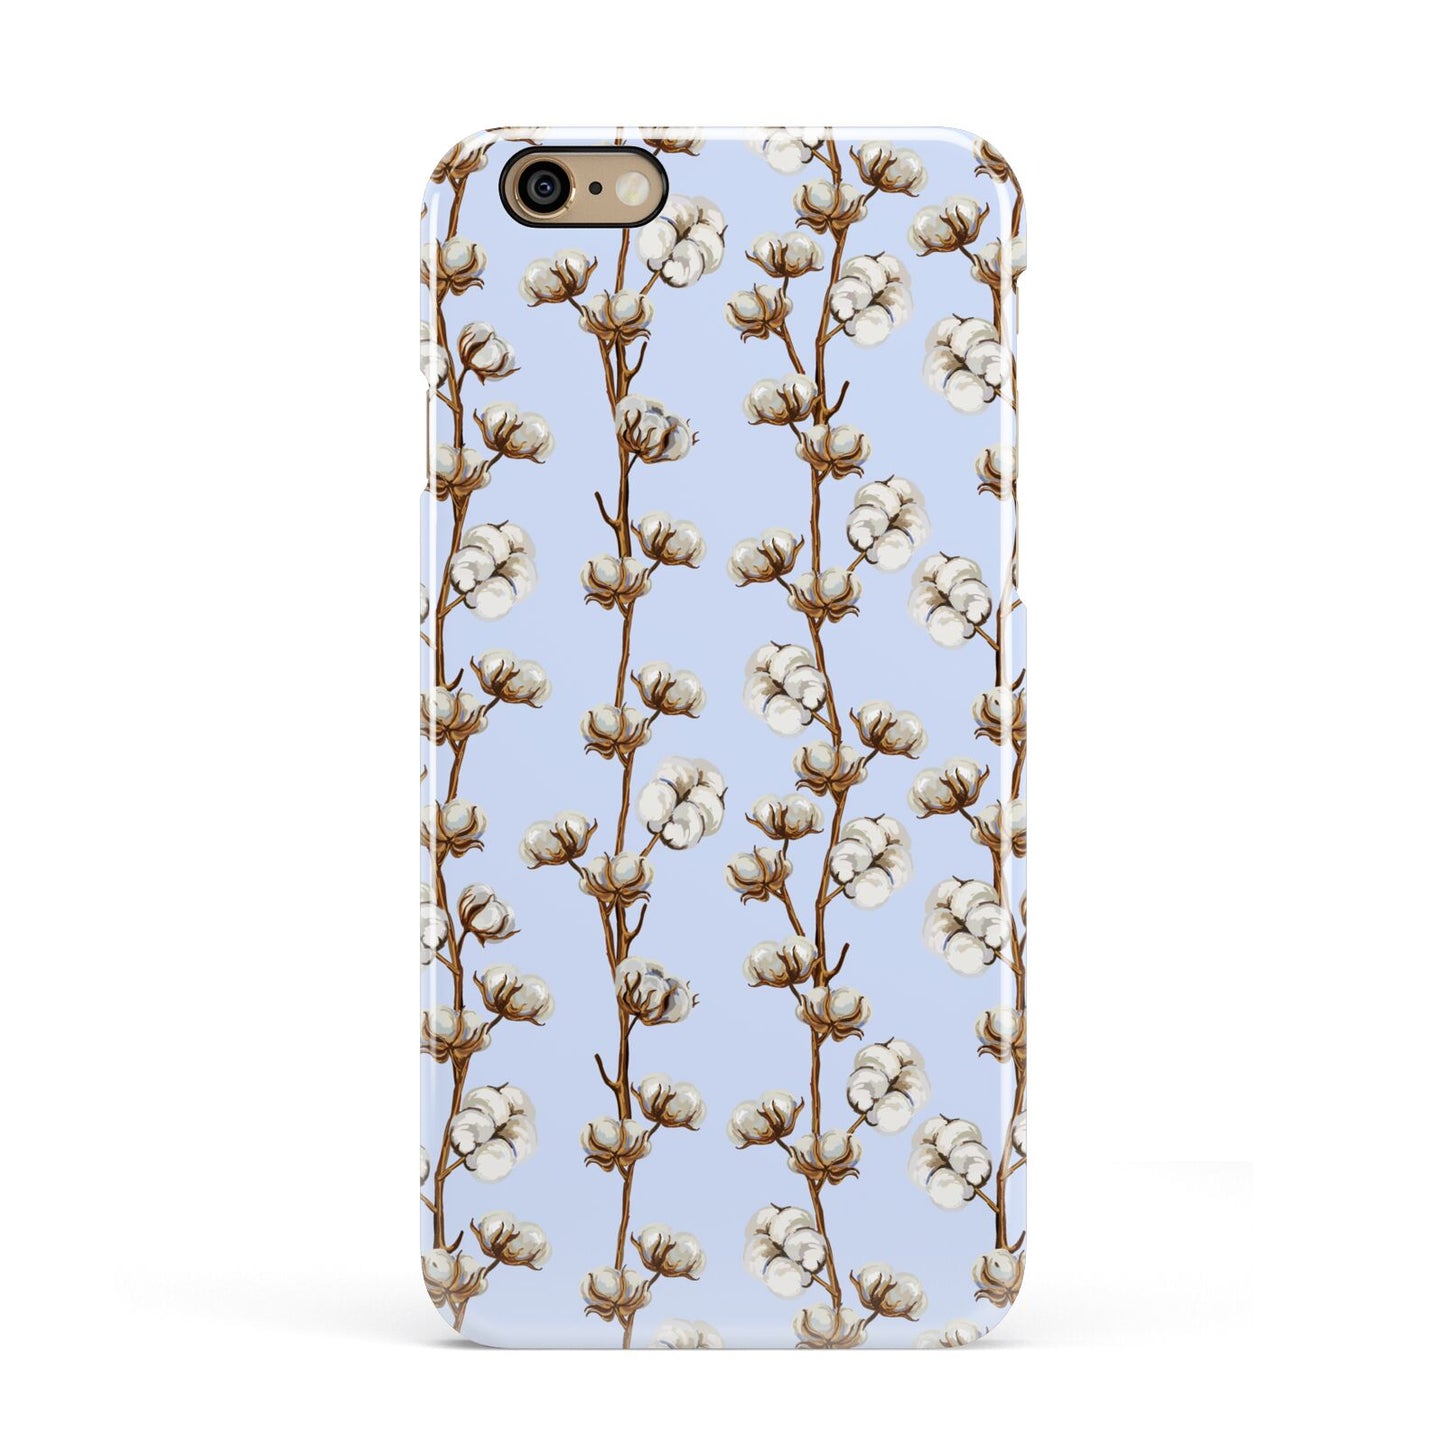 Cotton Branch Apple iPhone 6 3D Snap Case